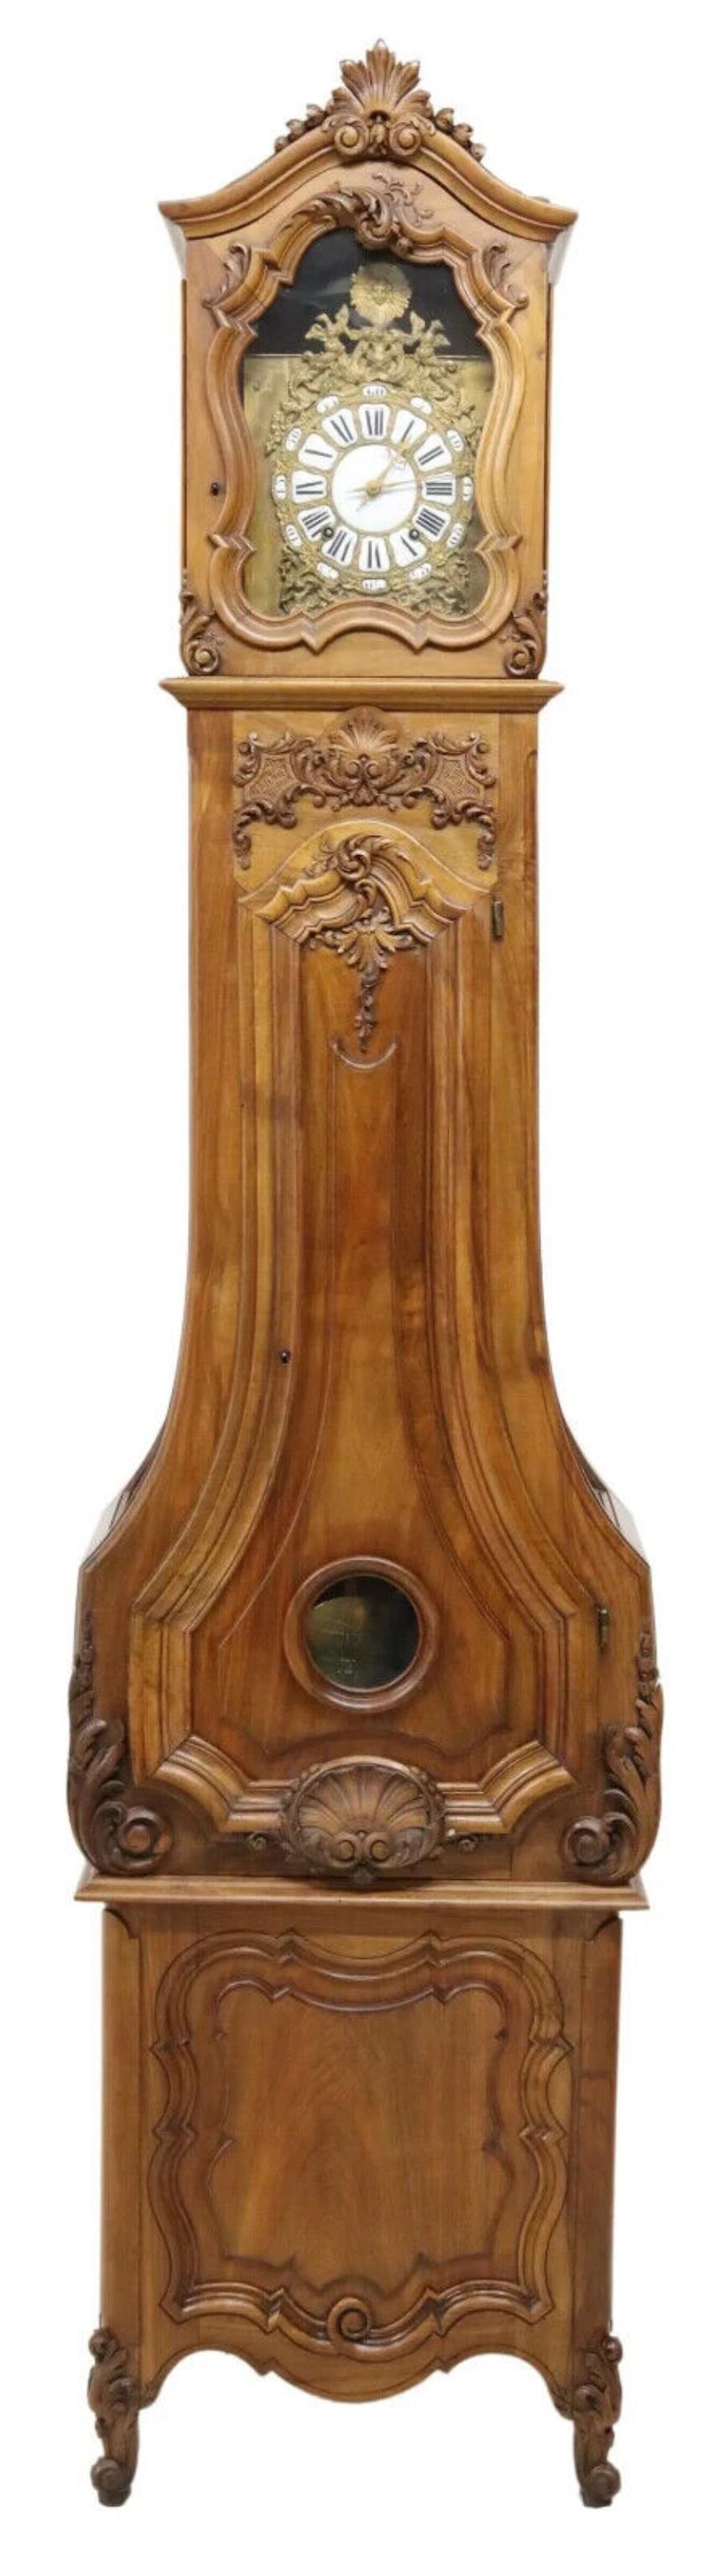 Magnifique horloge ancienne, de forme allongée, française,  Louis XV Style,  Noyer, feuillage, doré,  1889, 19e siècle !

Cette exquise horloge ancienne de style longcase incarne l'opulence du design français dans le style Louis XV. Fabriqué en 1889